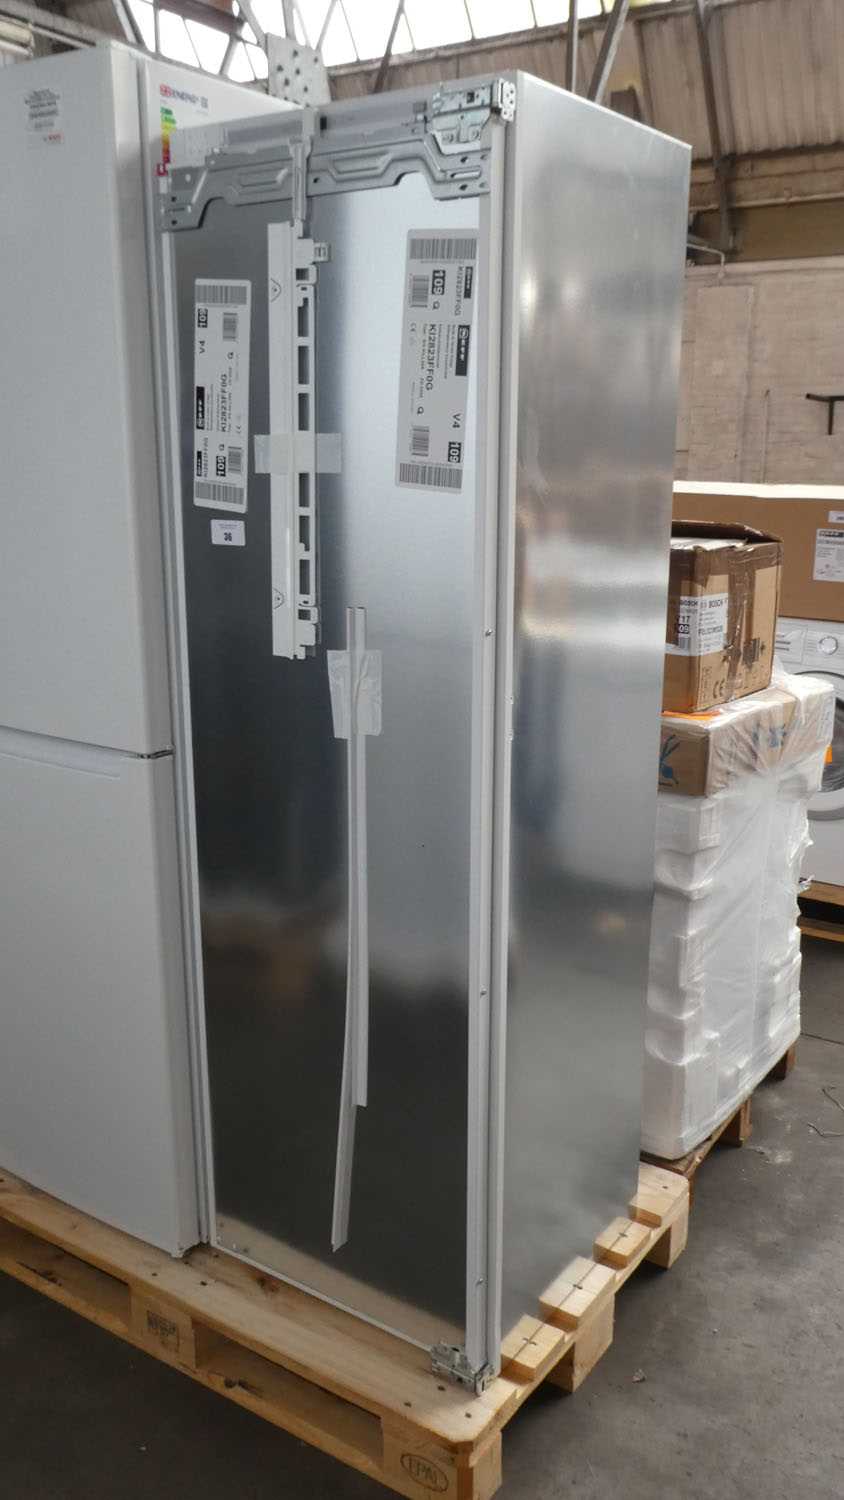 Lot 36 - KI2823FF0GB Neff Built-in larder fridge